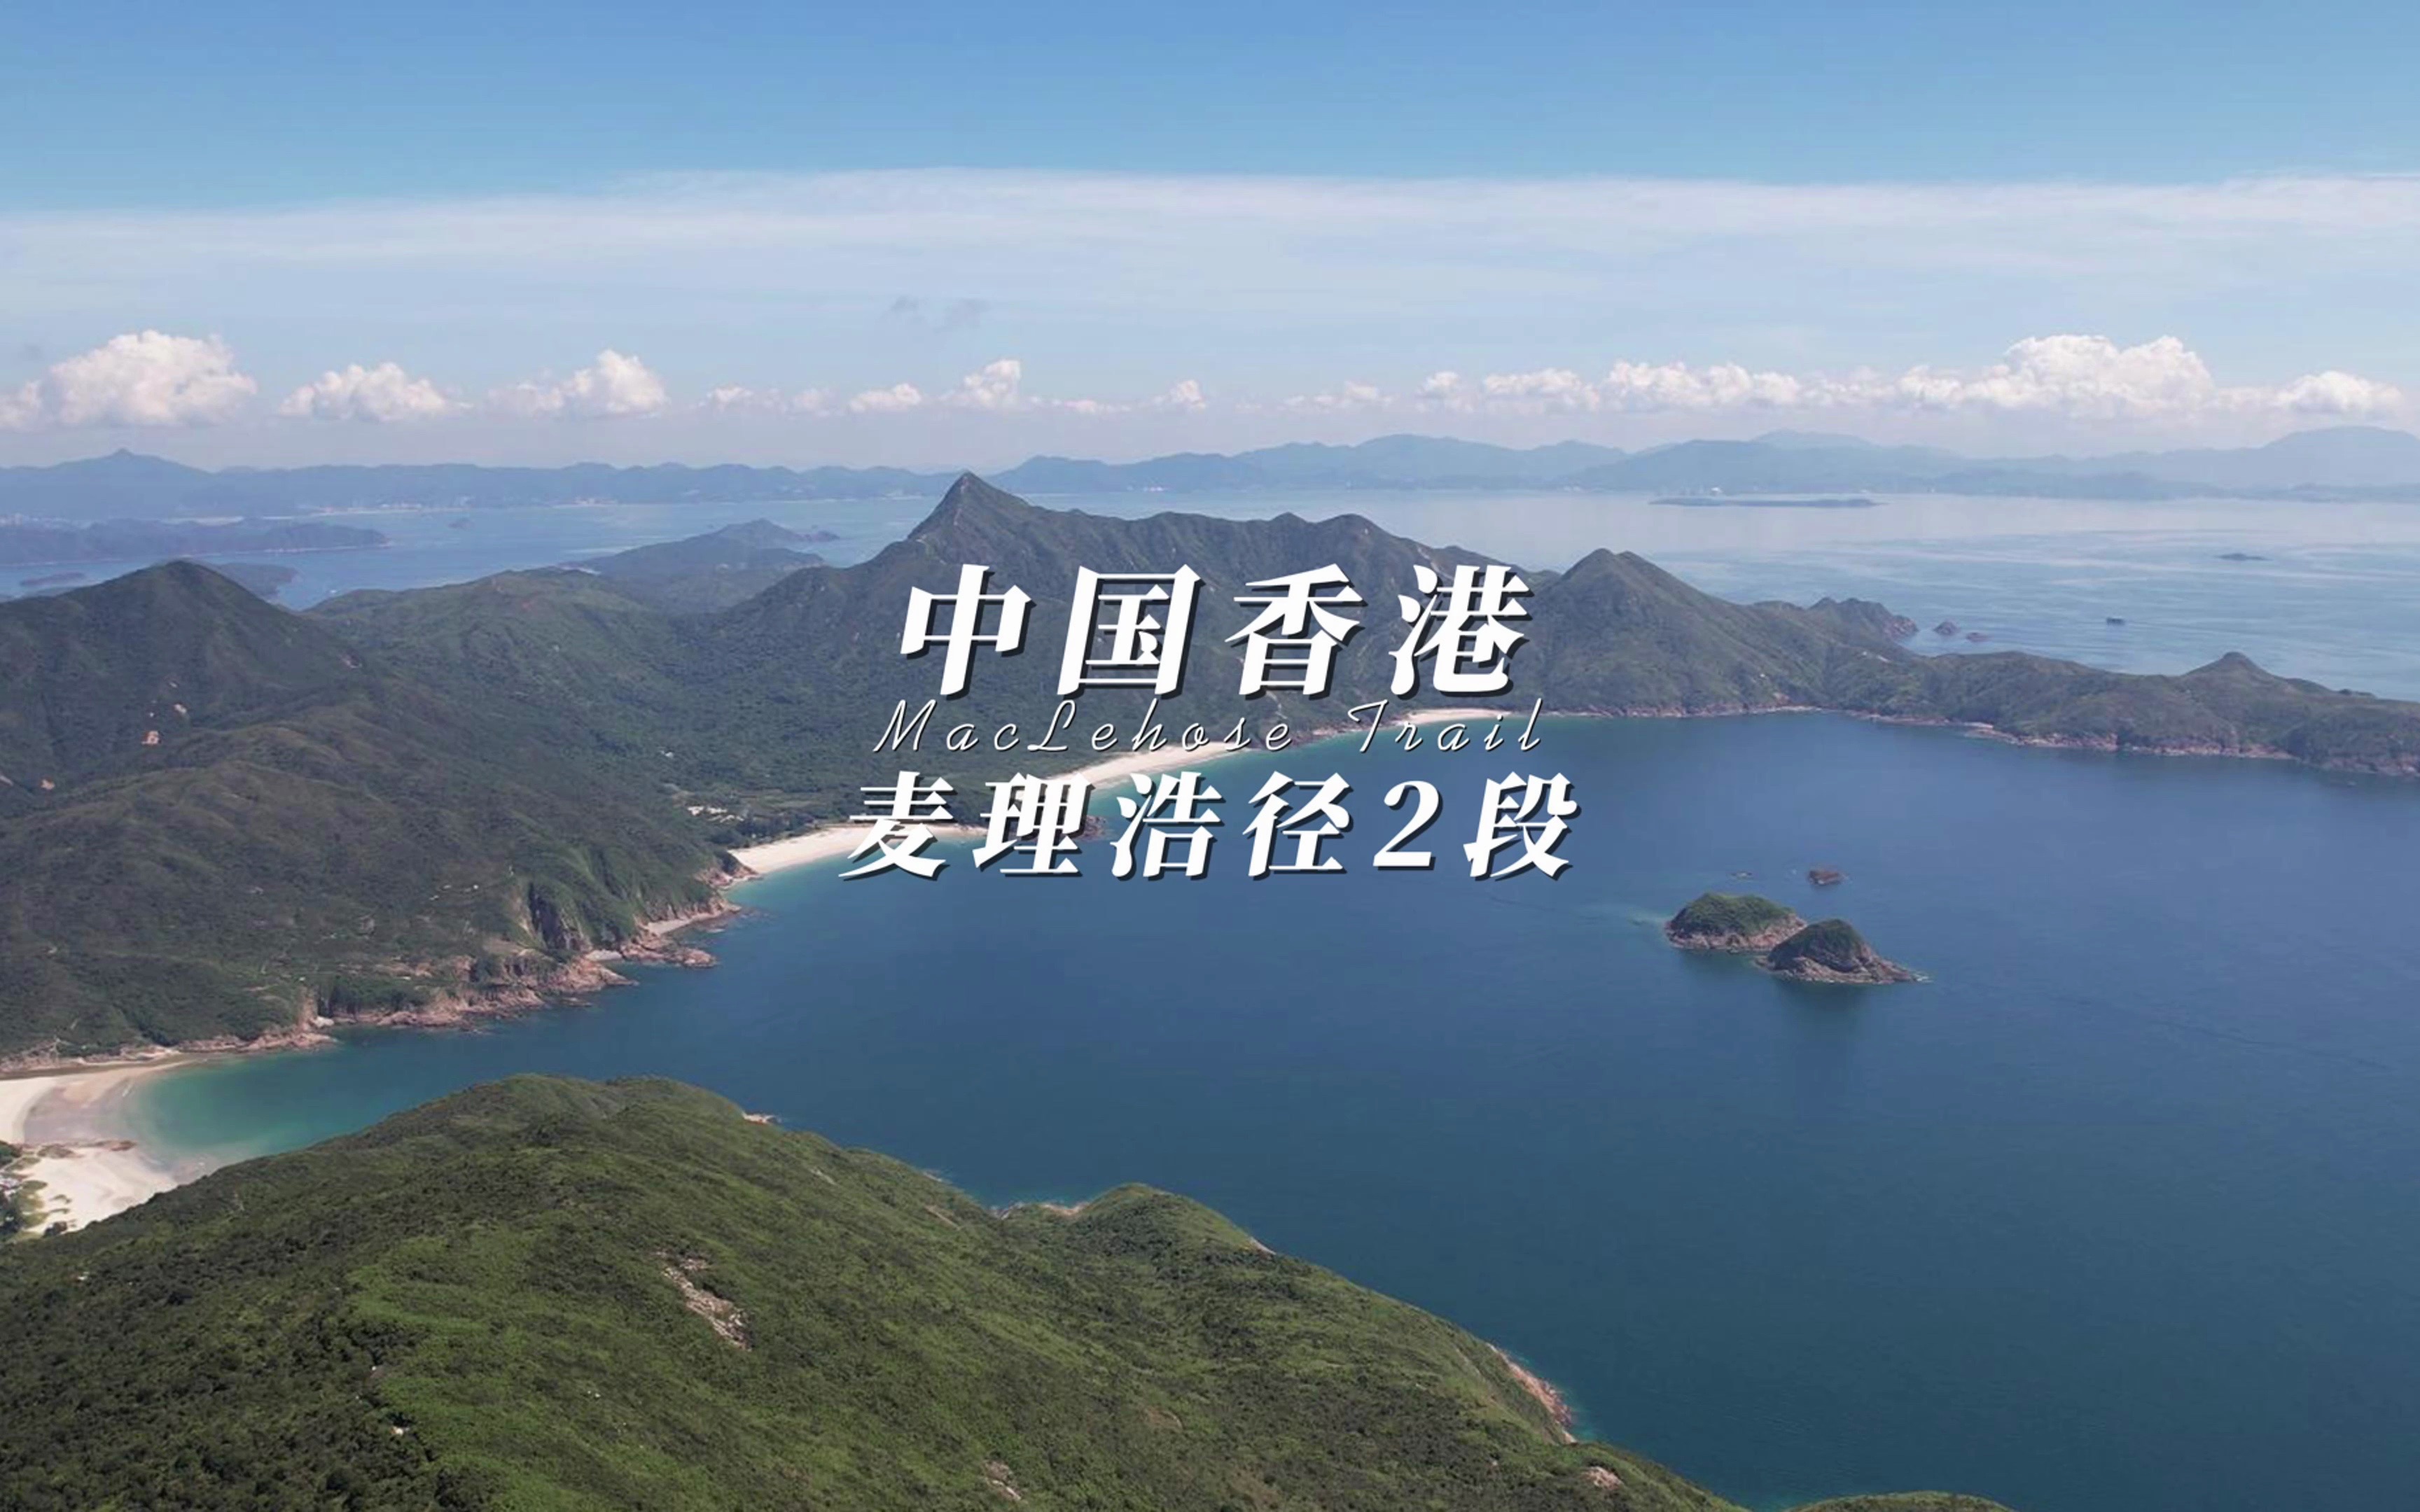 香港 麦理浩径 第二段 全网最详细的徒步攻略 打卡这条被美国国家地理频道评选为全球前20的远足徒步路径